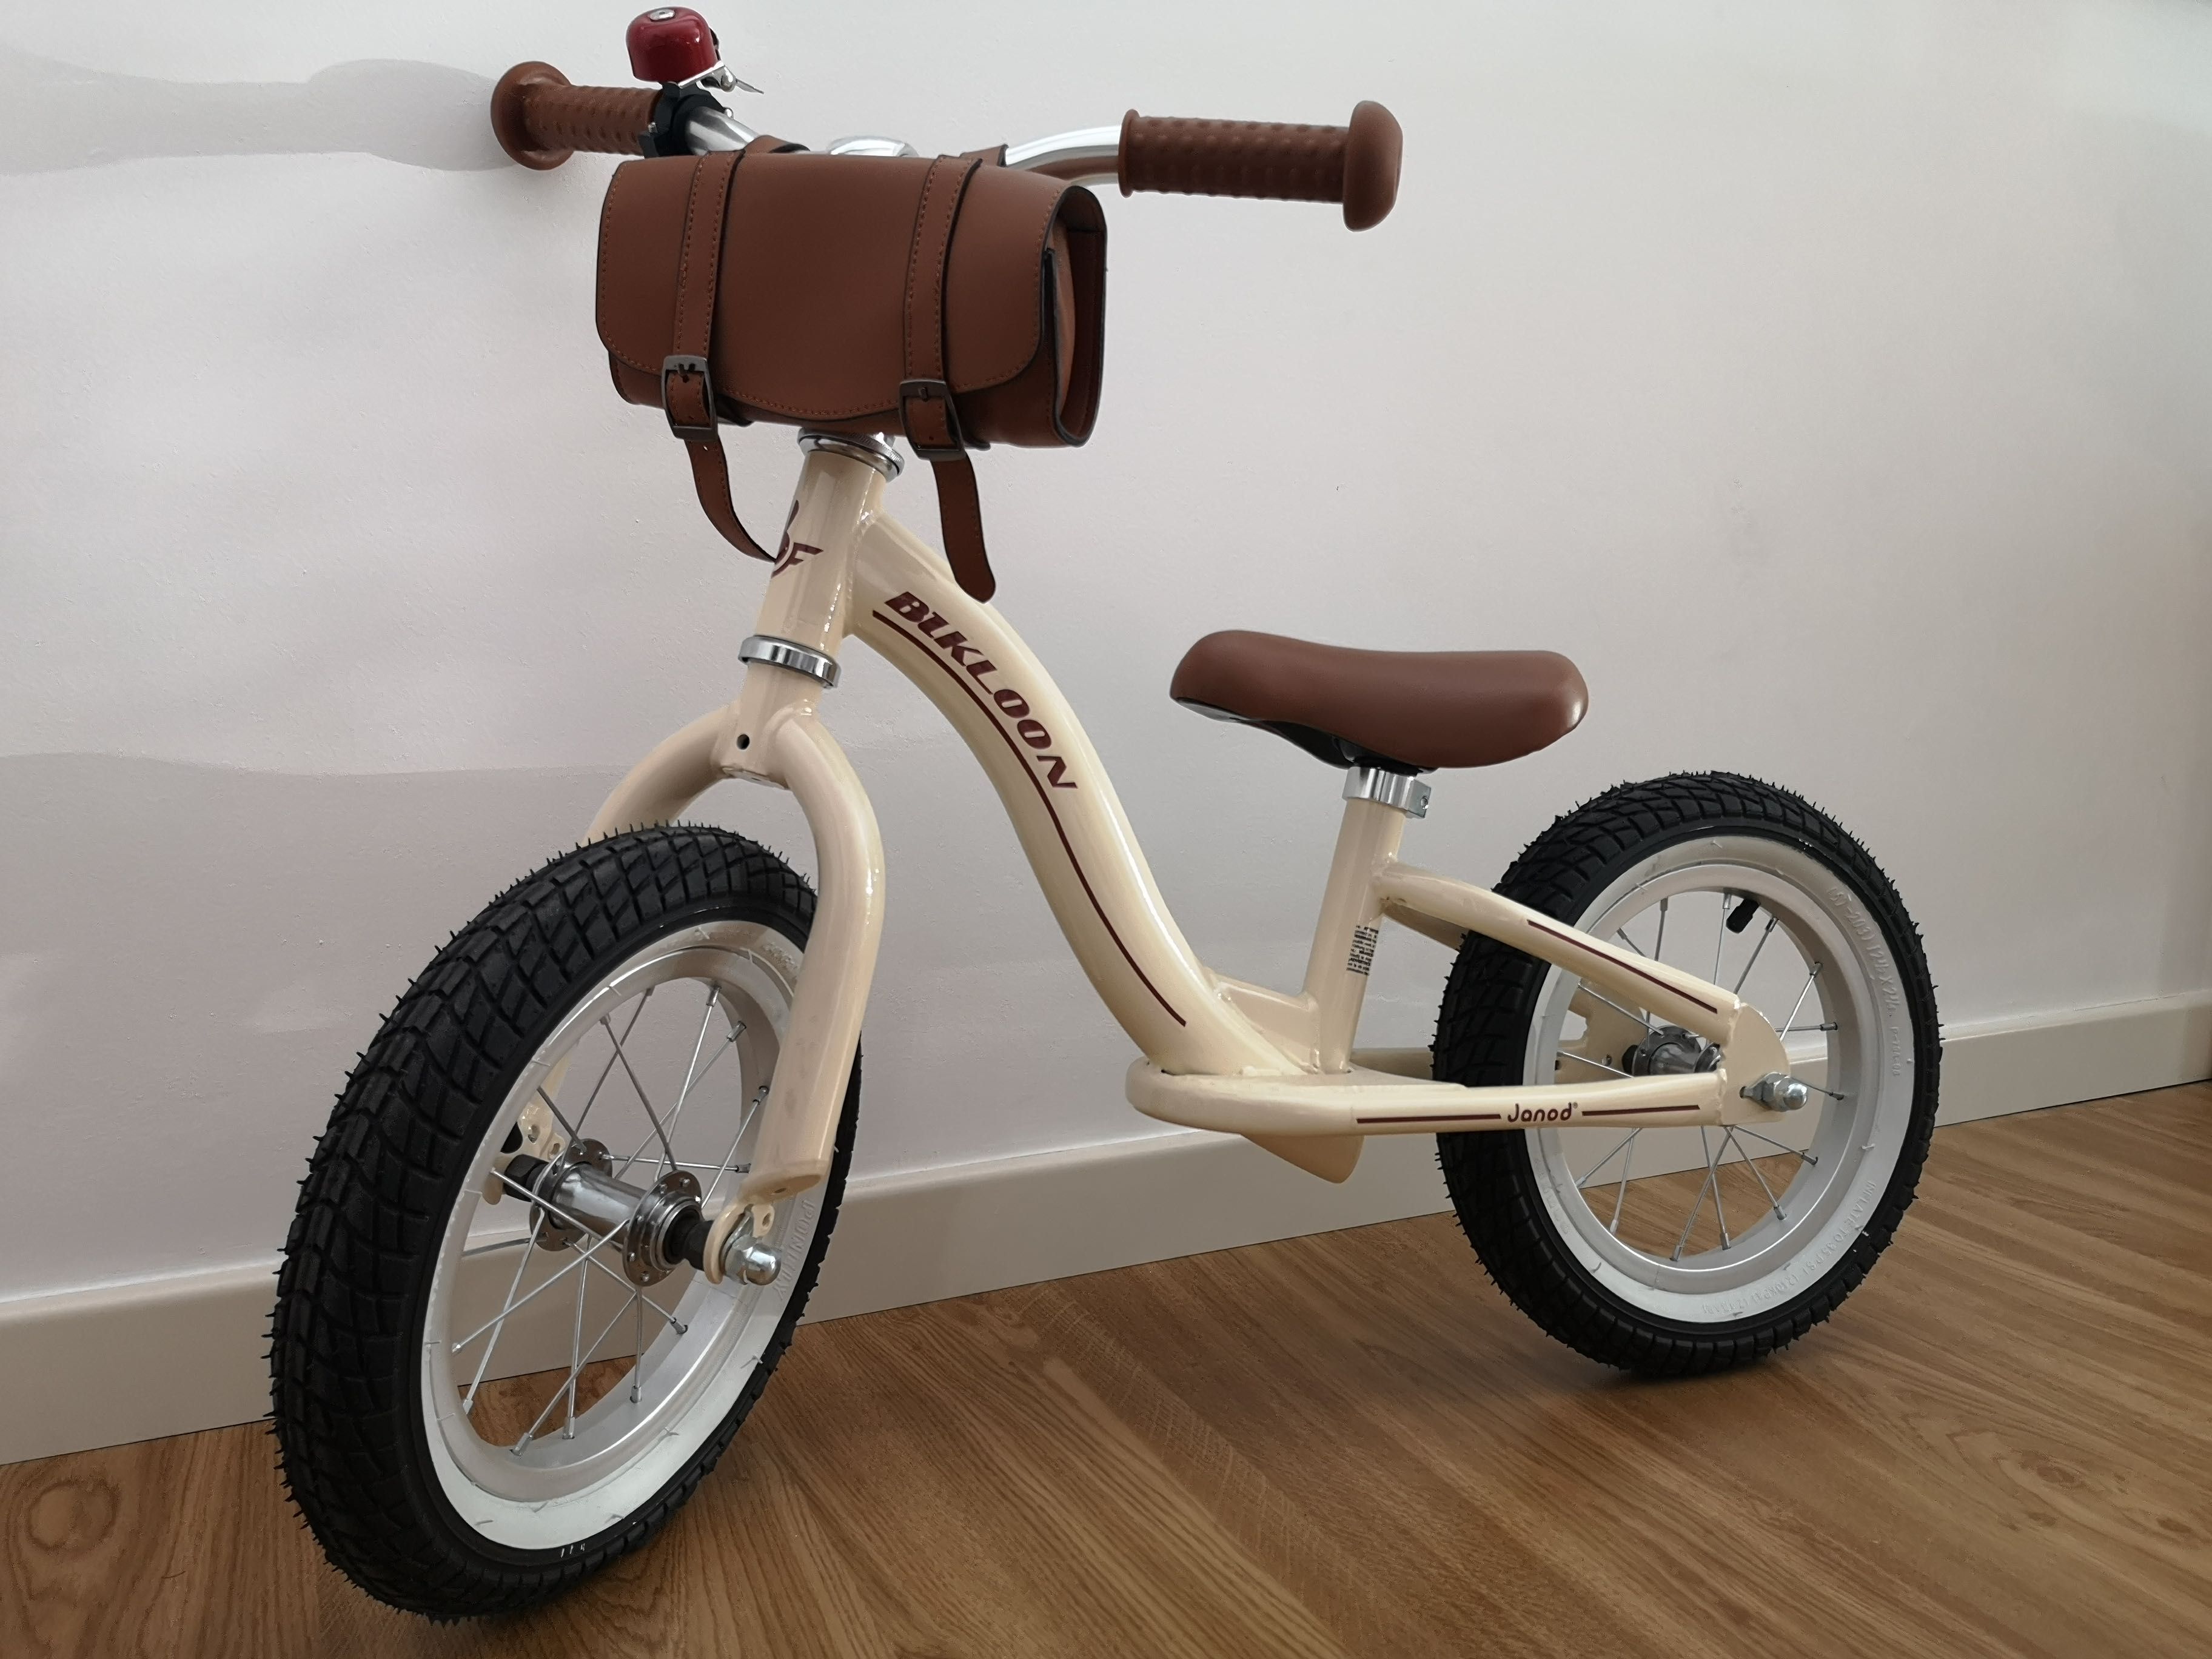 Janod - Metal Balance Bike - Bicicleta de equilíbrio sem pedais